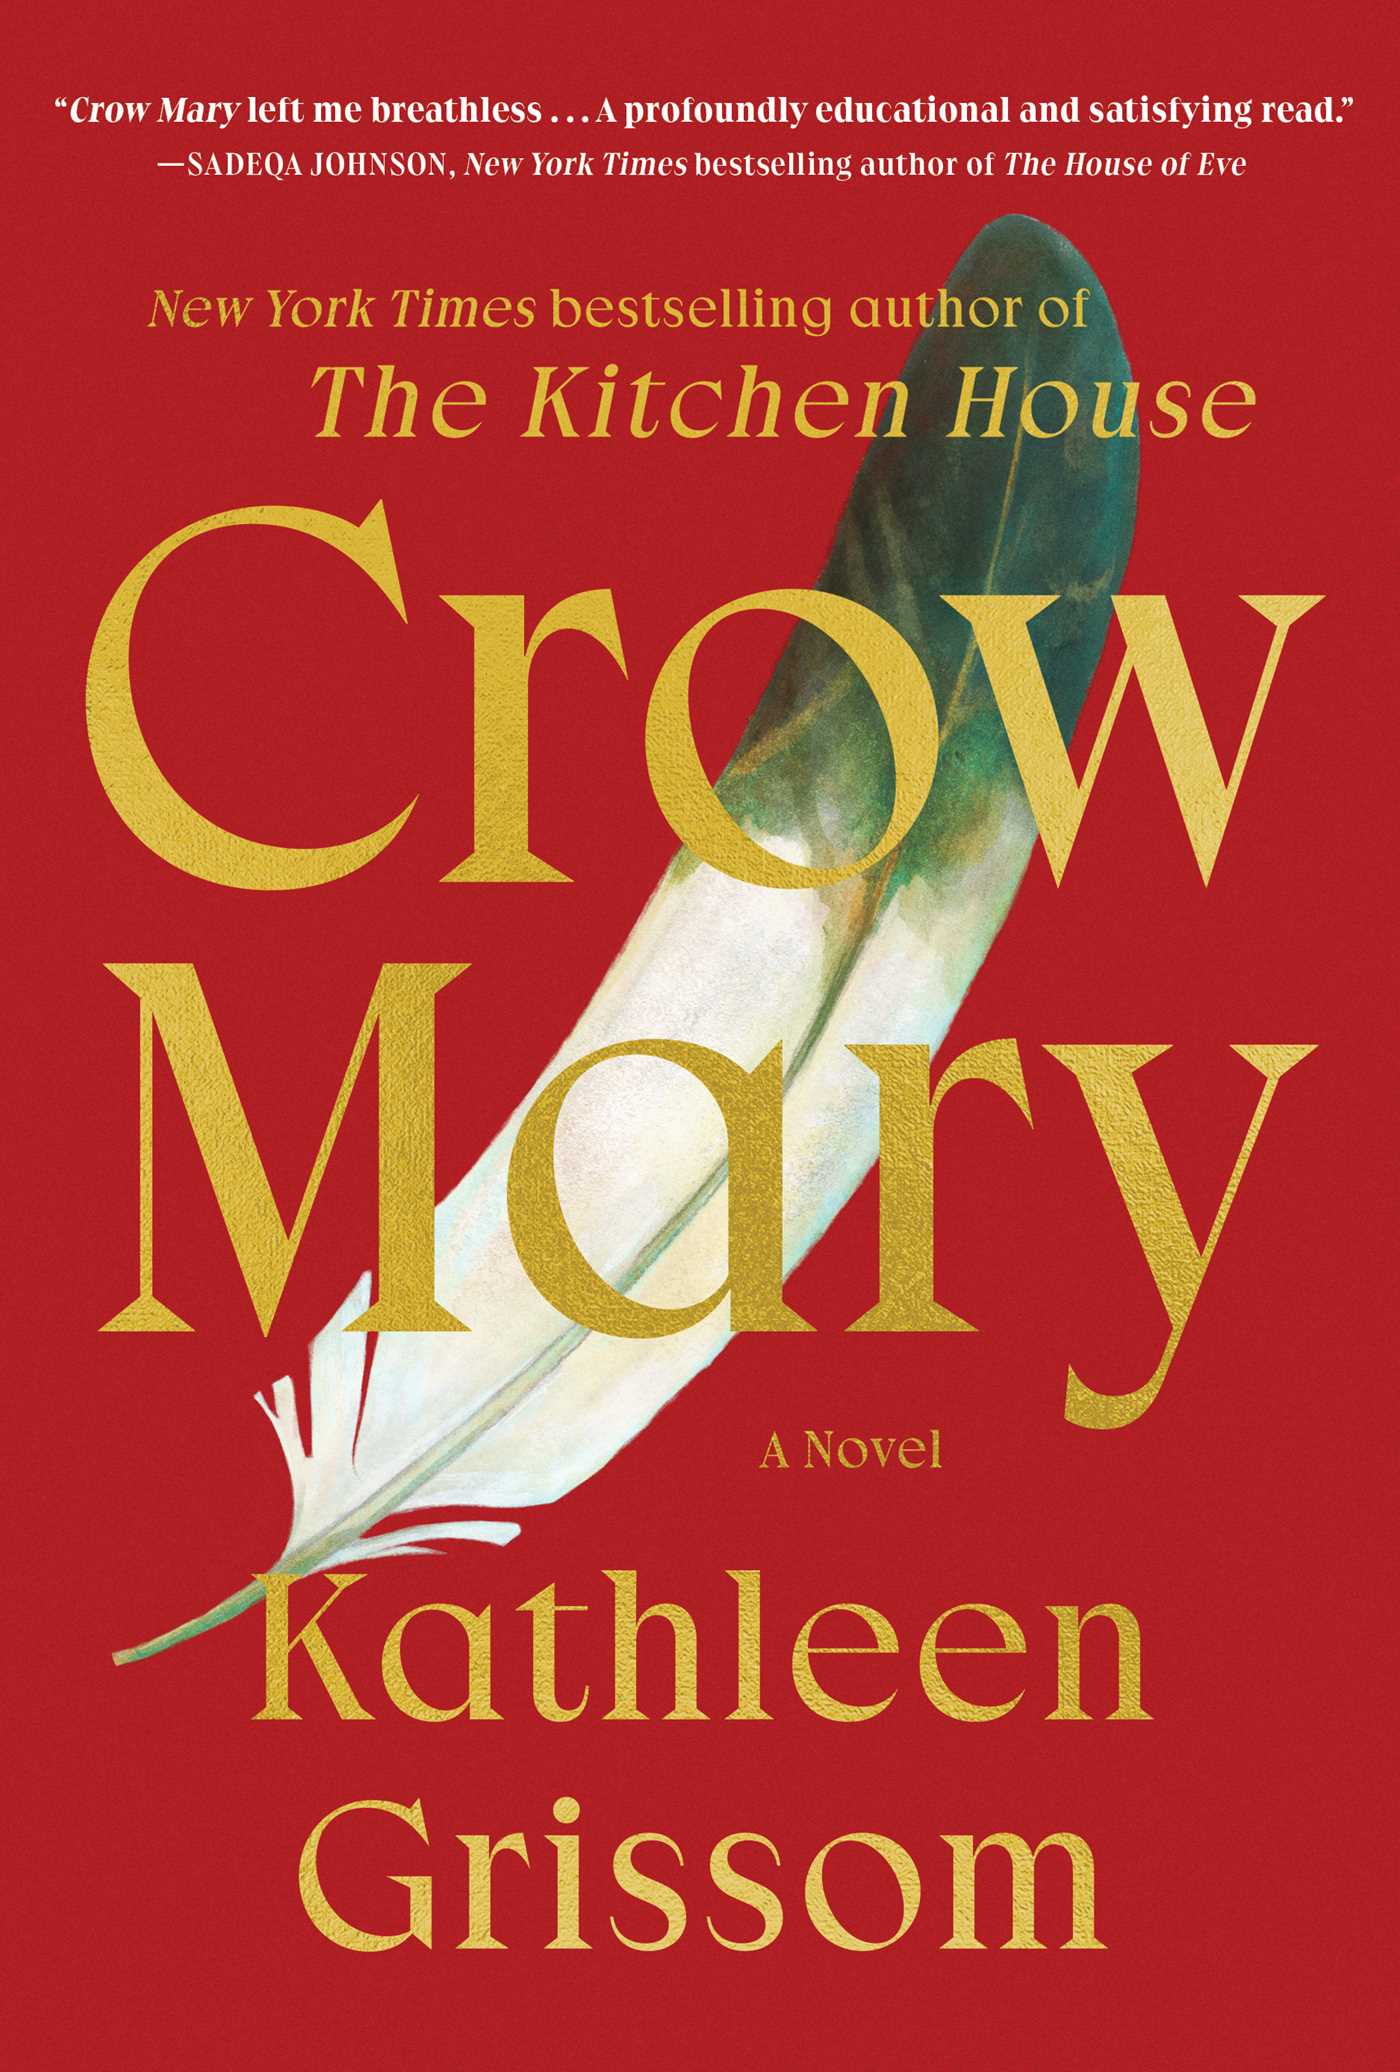 Crow Mary : A Novel | Grissom, Kathleen